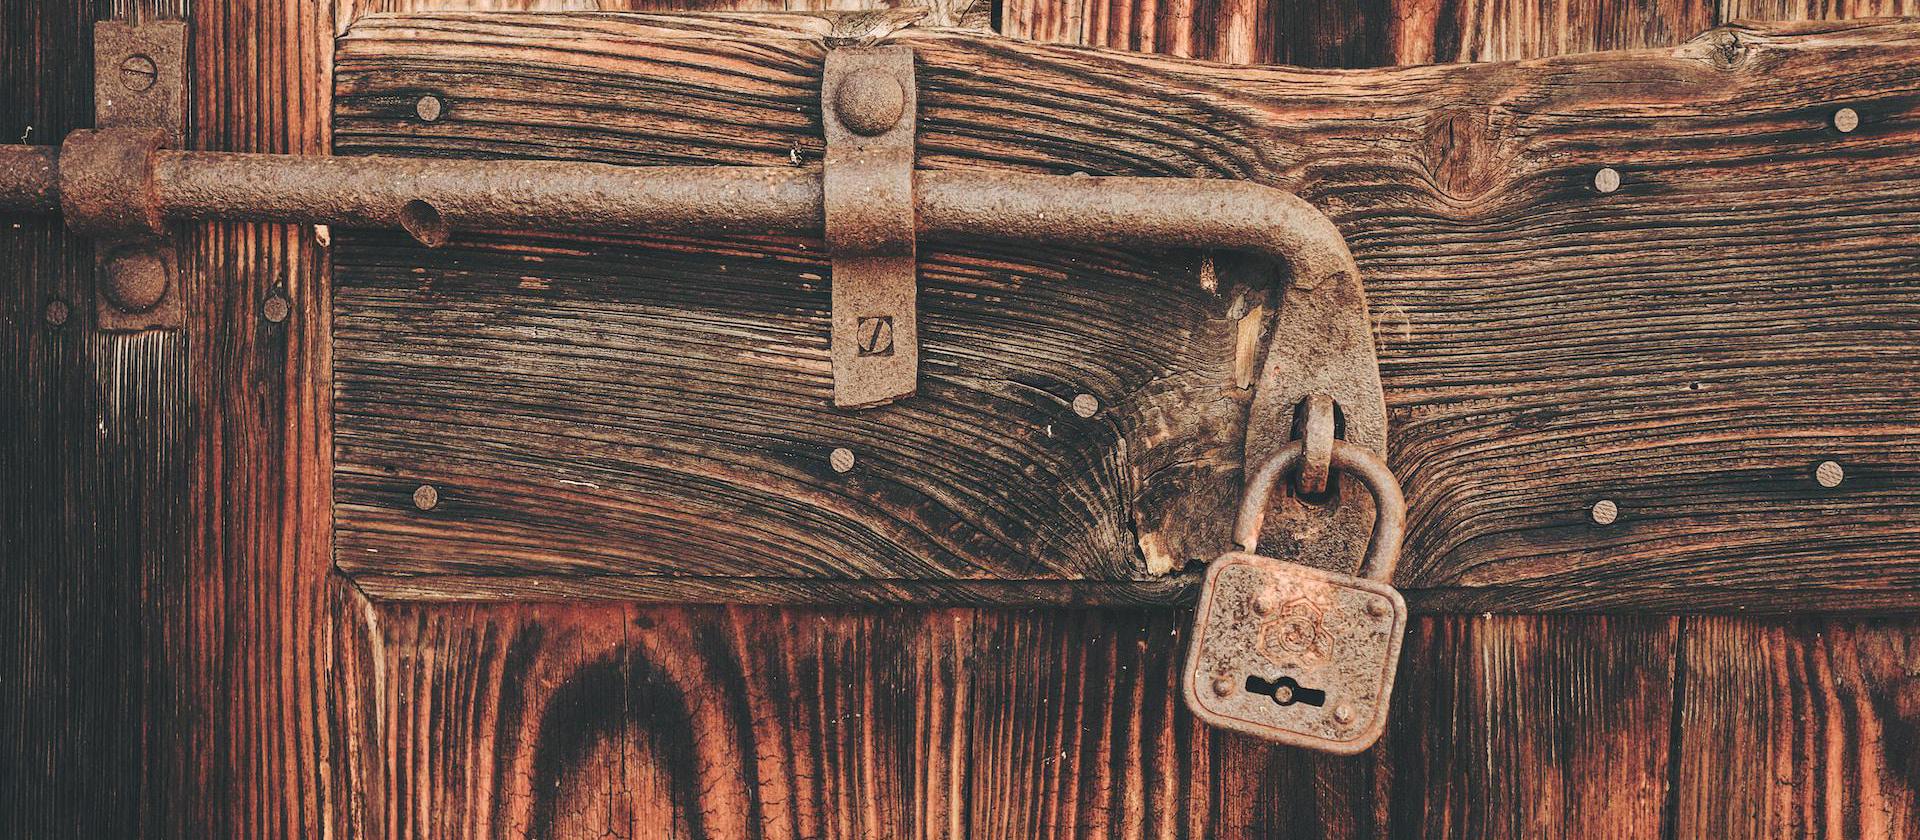 Rustic lock against wooden door.